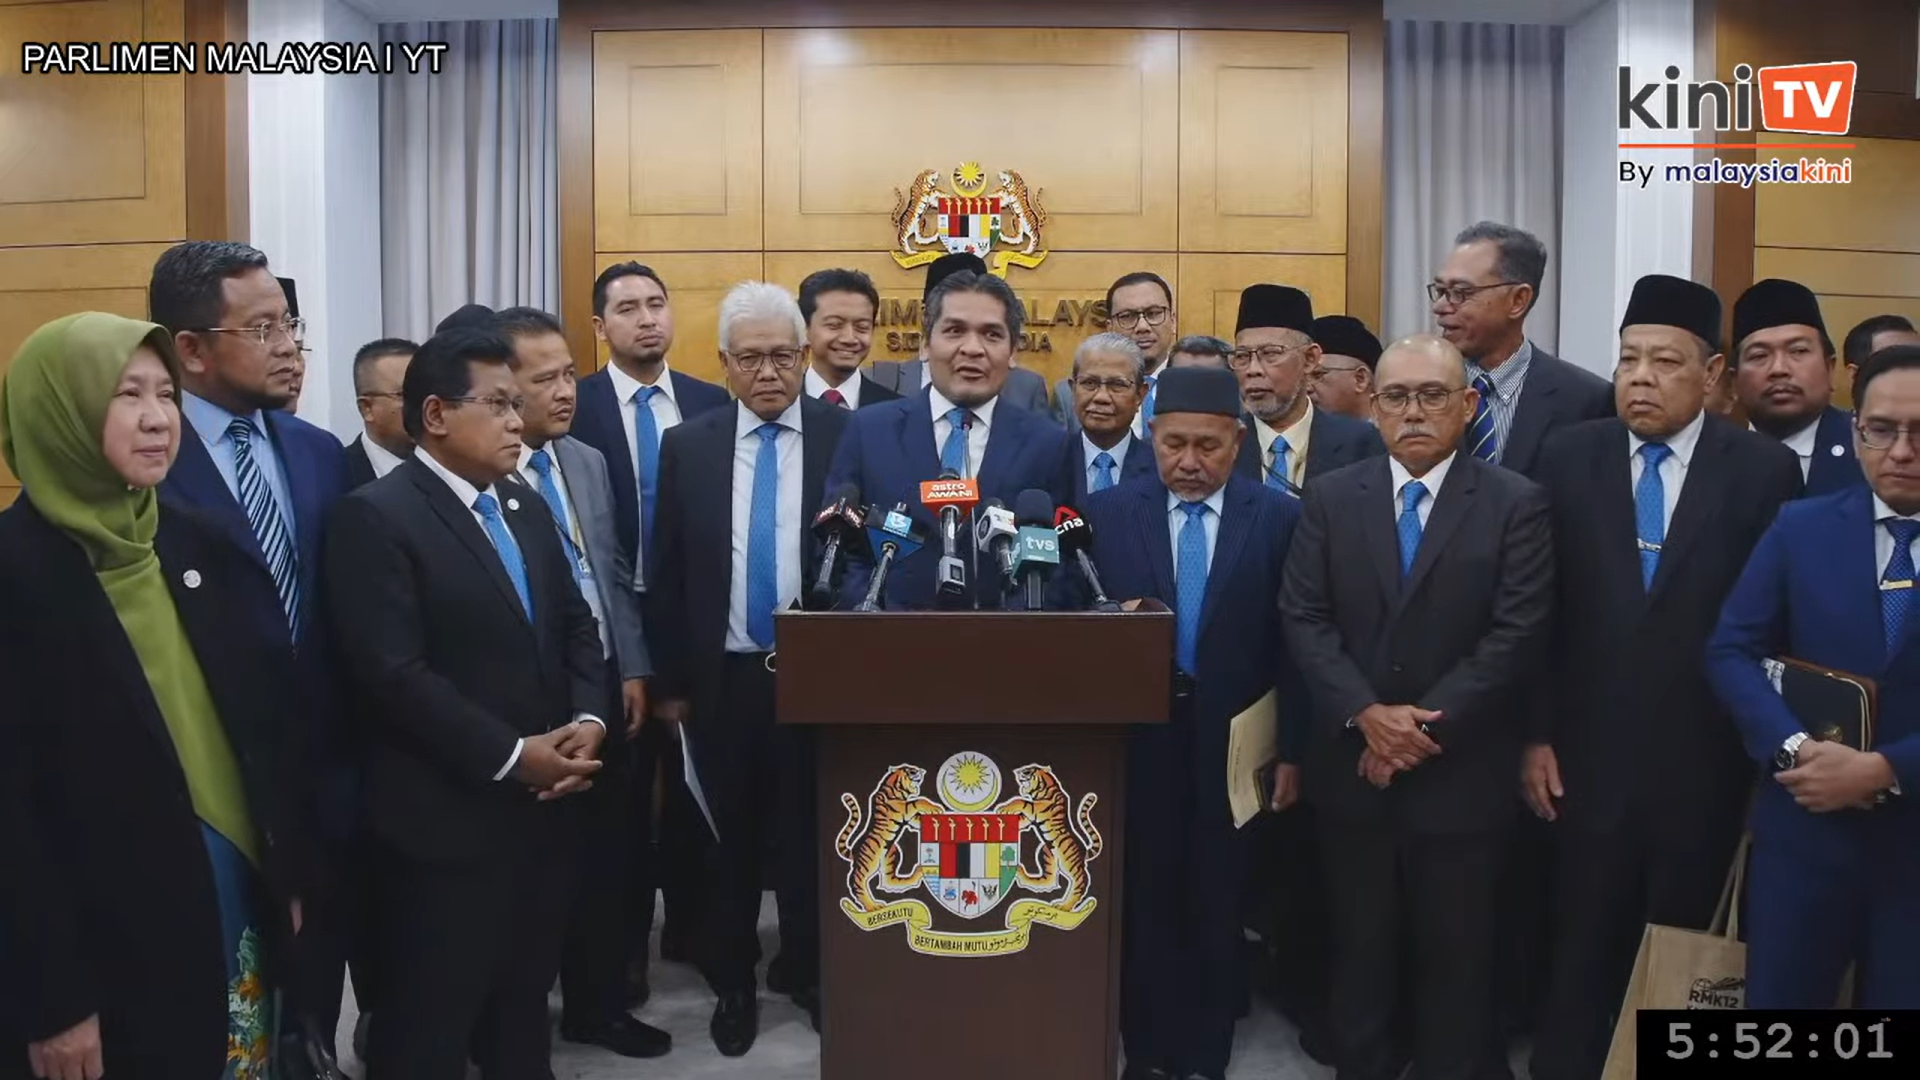 [LIVE] Sidang media pembangkang selepas keluar dari Dewan Rakyat